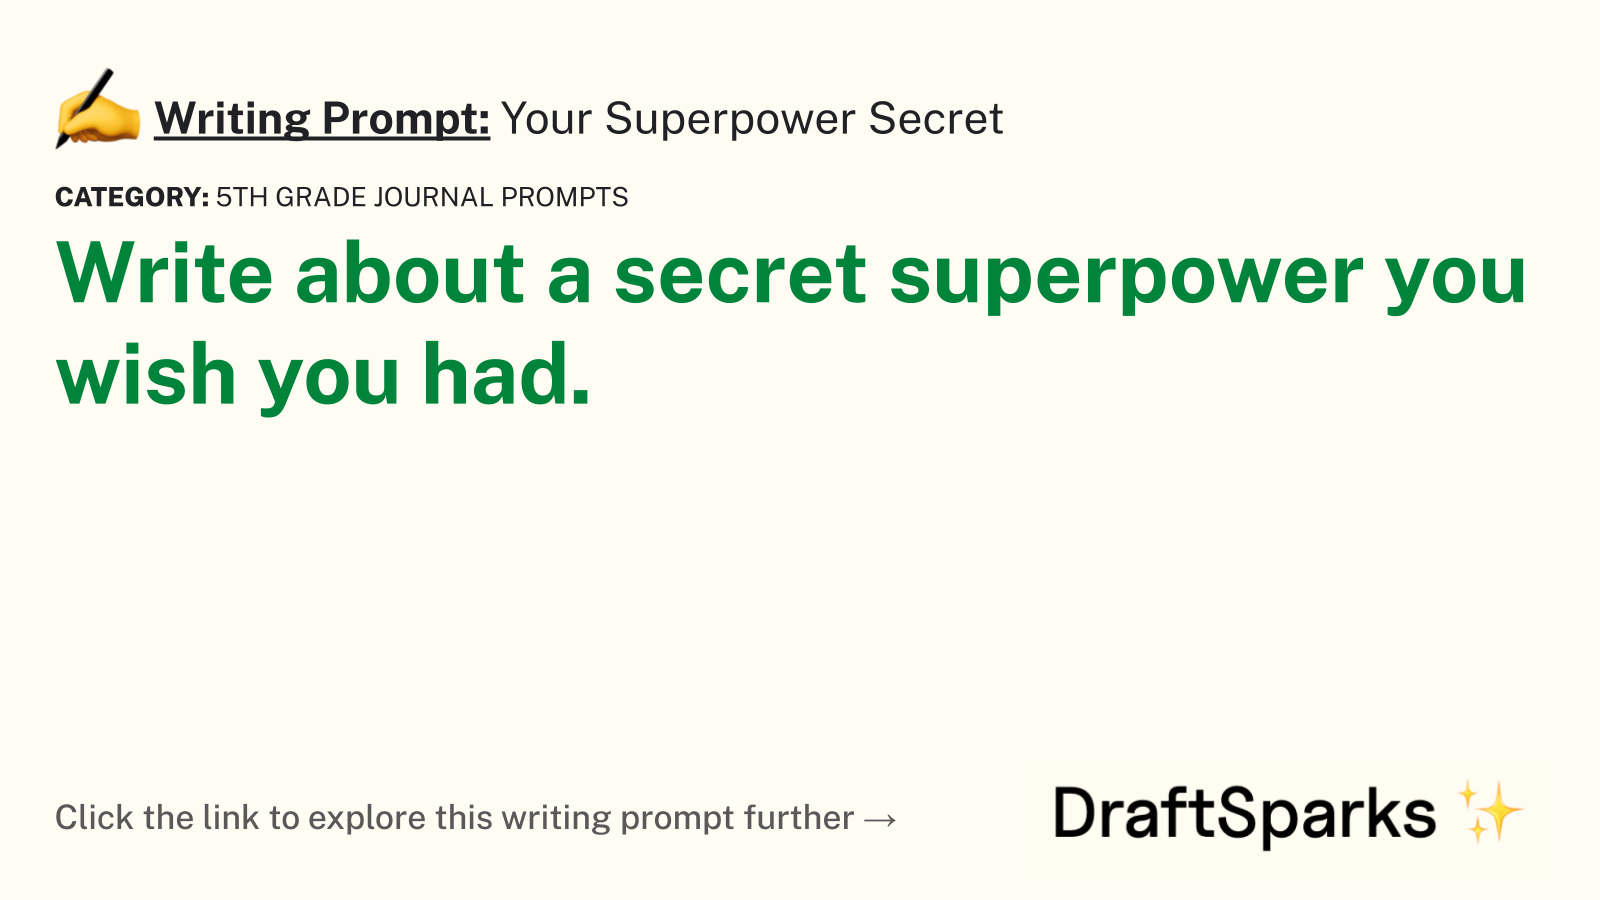 Your Superpower Secret